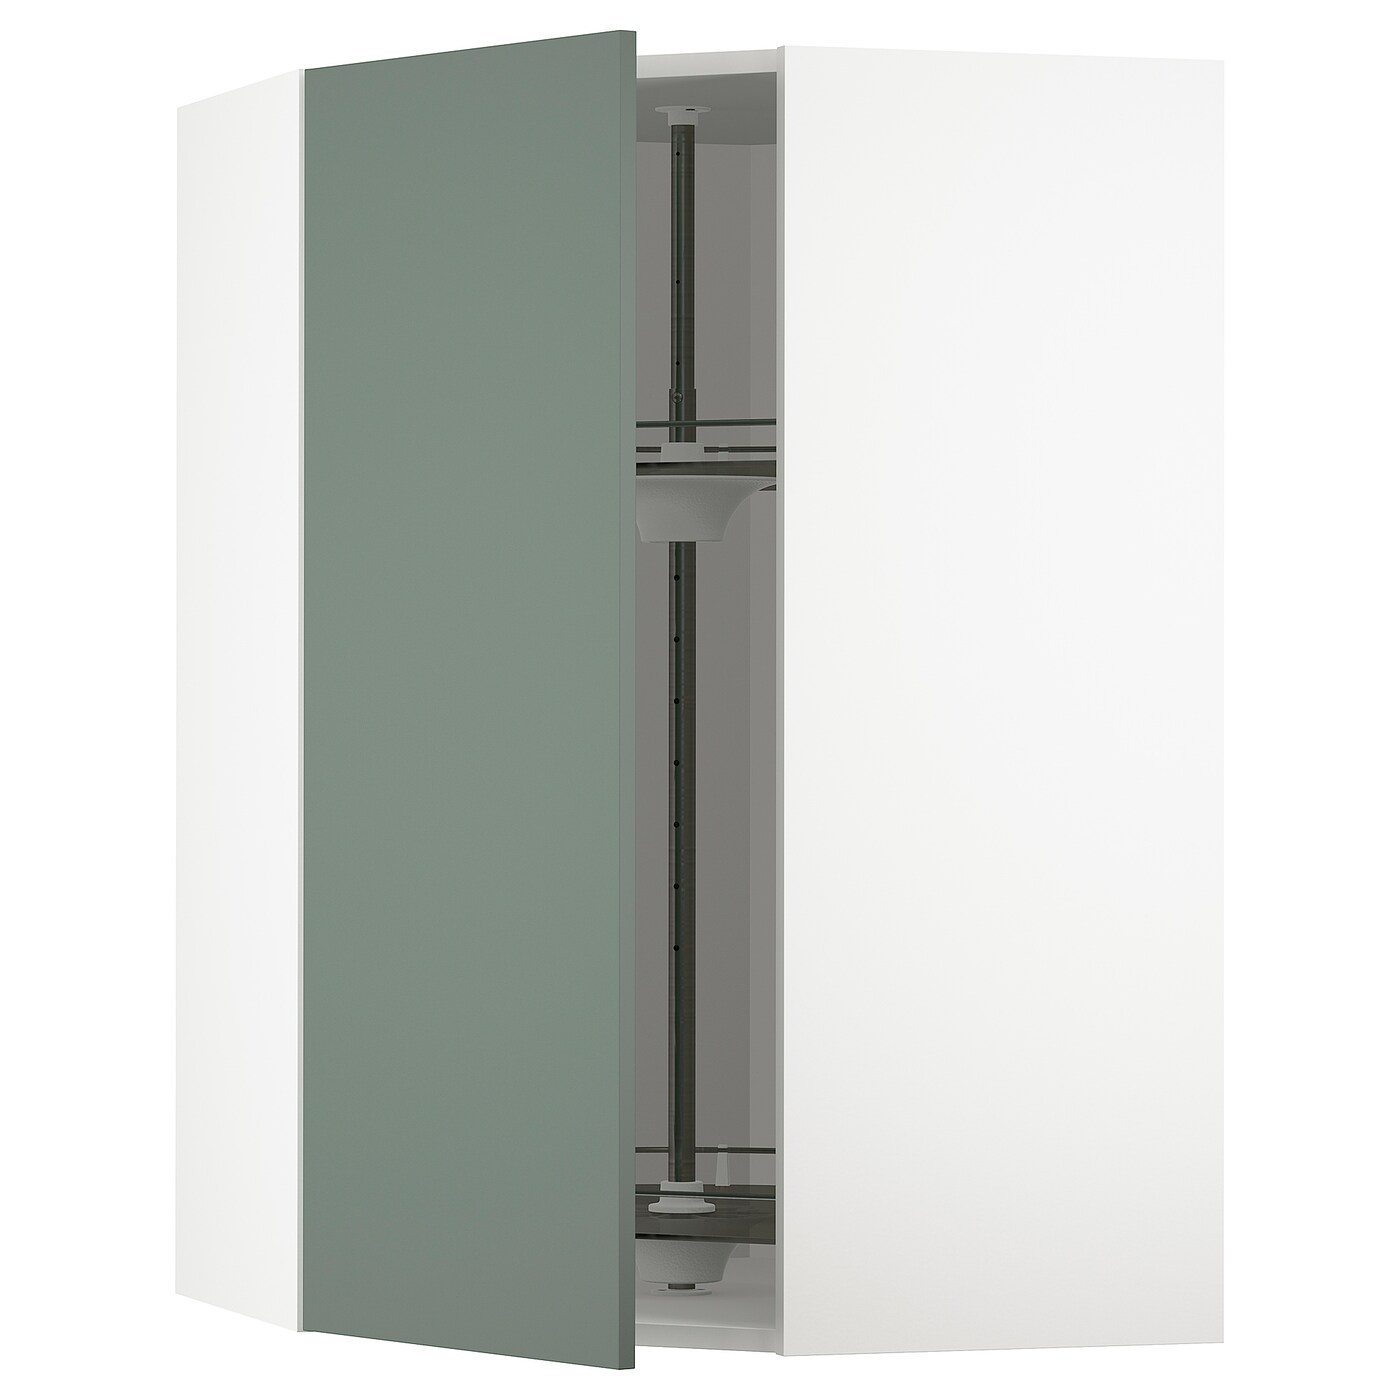 Угловой навесной шкаф с каруселью - METOD  IKEA/  МЕТОД ИКЕА, 100х68 см, белый/темно-зеленый